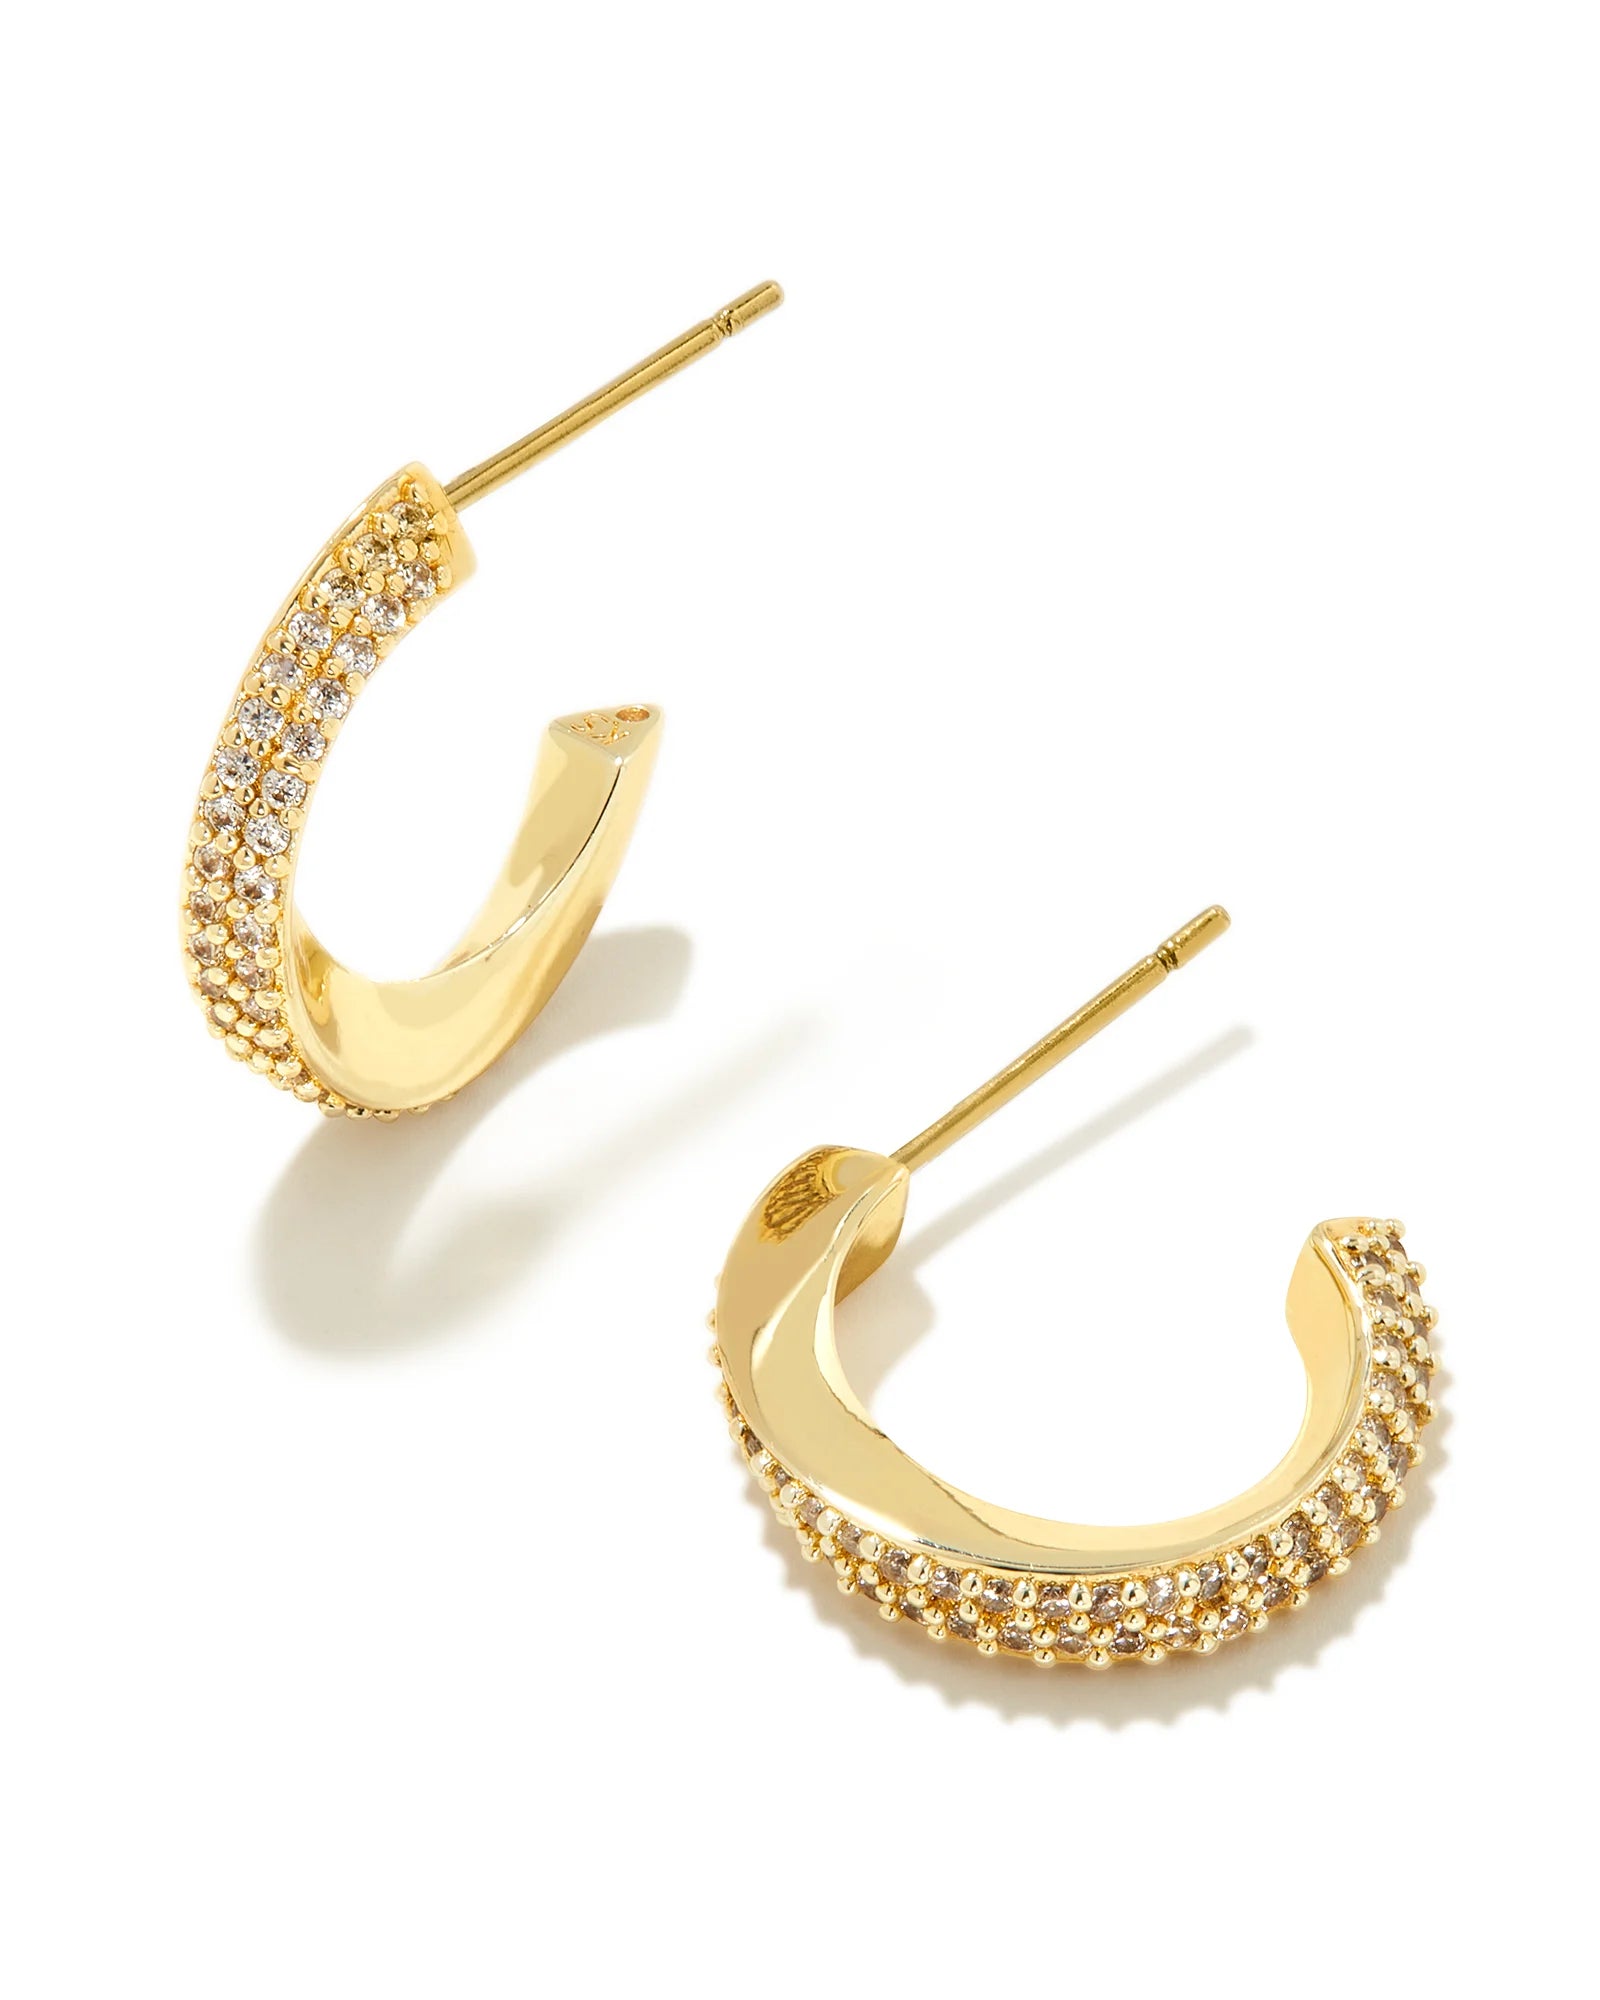 Kendra Scott Ella Huggie Earrings Gold White CZ-Earrings-Kendra Scott-E00254GLD-The Twisted Chandelier